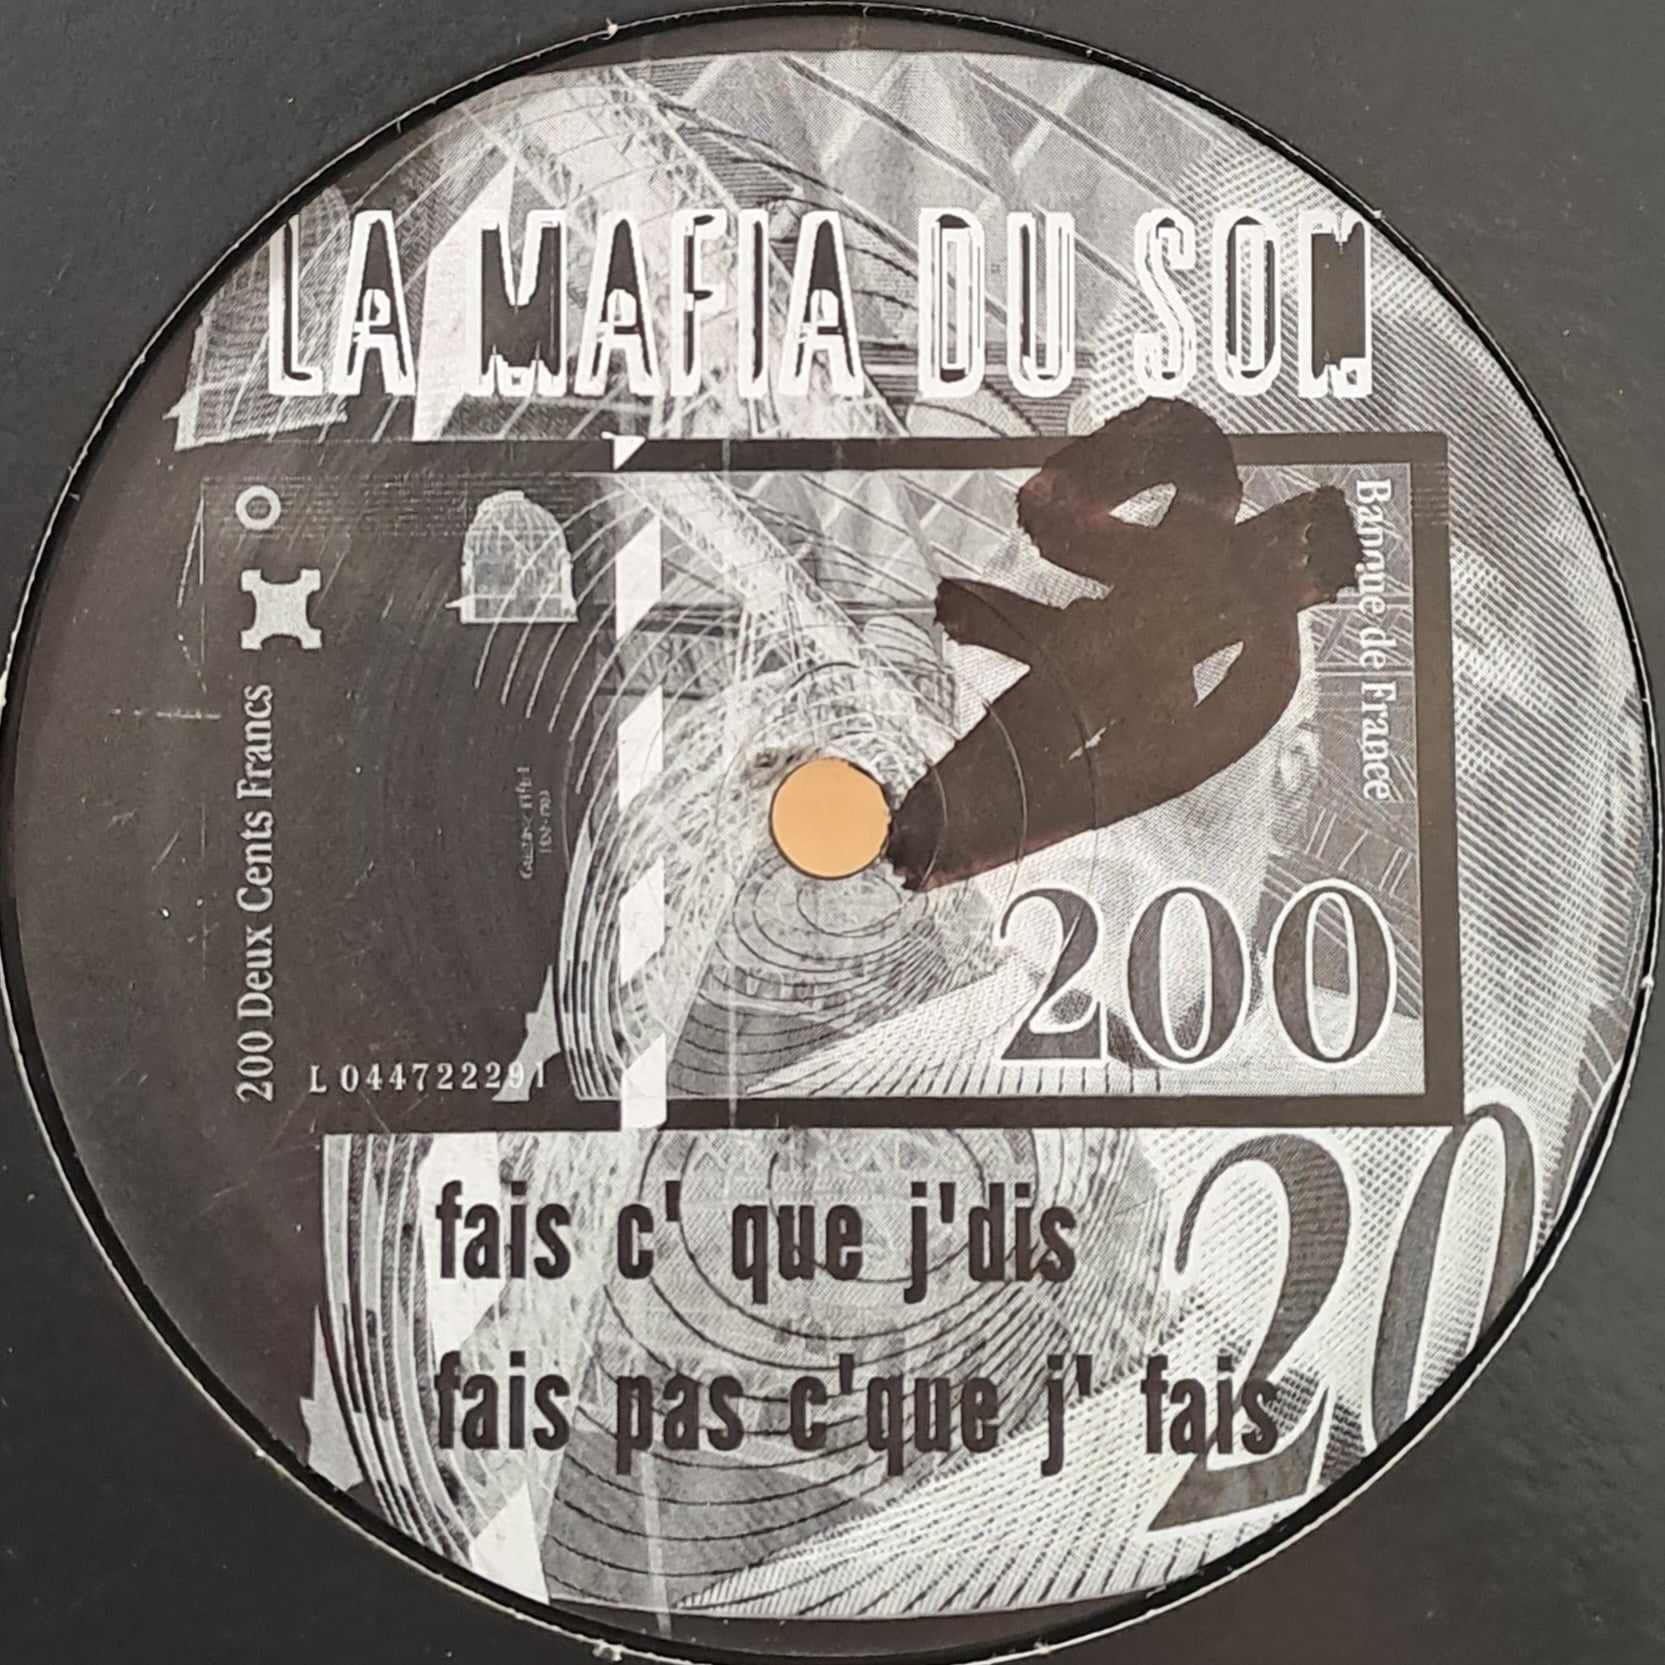 La Mafia Du Son 01 - vinyle freetekno